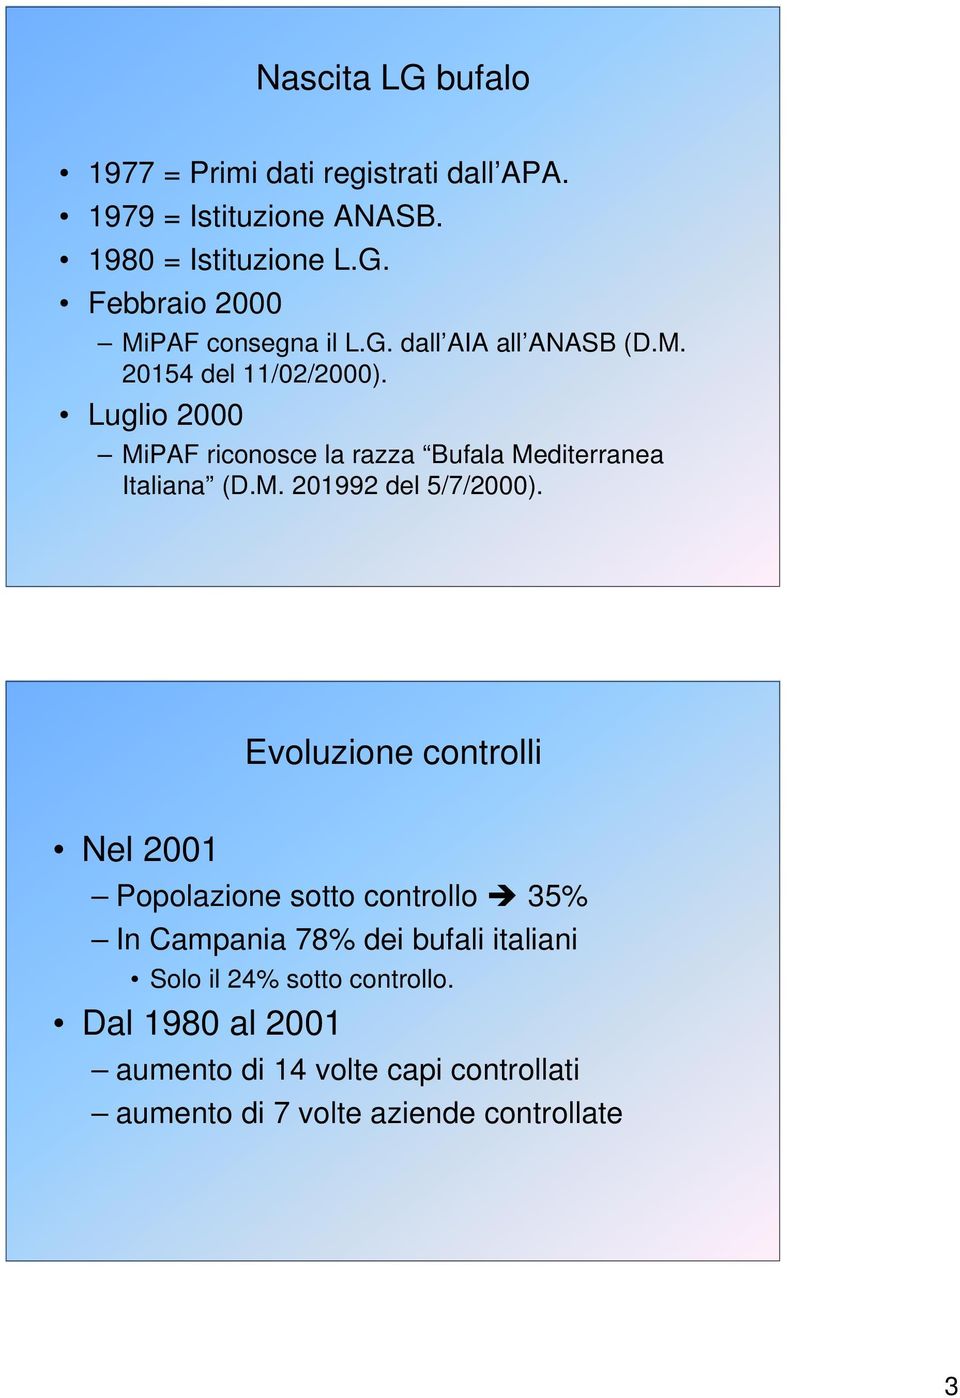 Evoluzione controlli Nel 2001 Popolazione sotto controllo 35% In Campania 78% dei bufali italiani Solo il 24% sotto controllo.